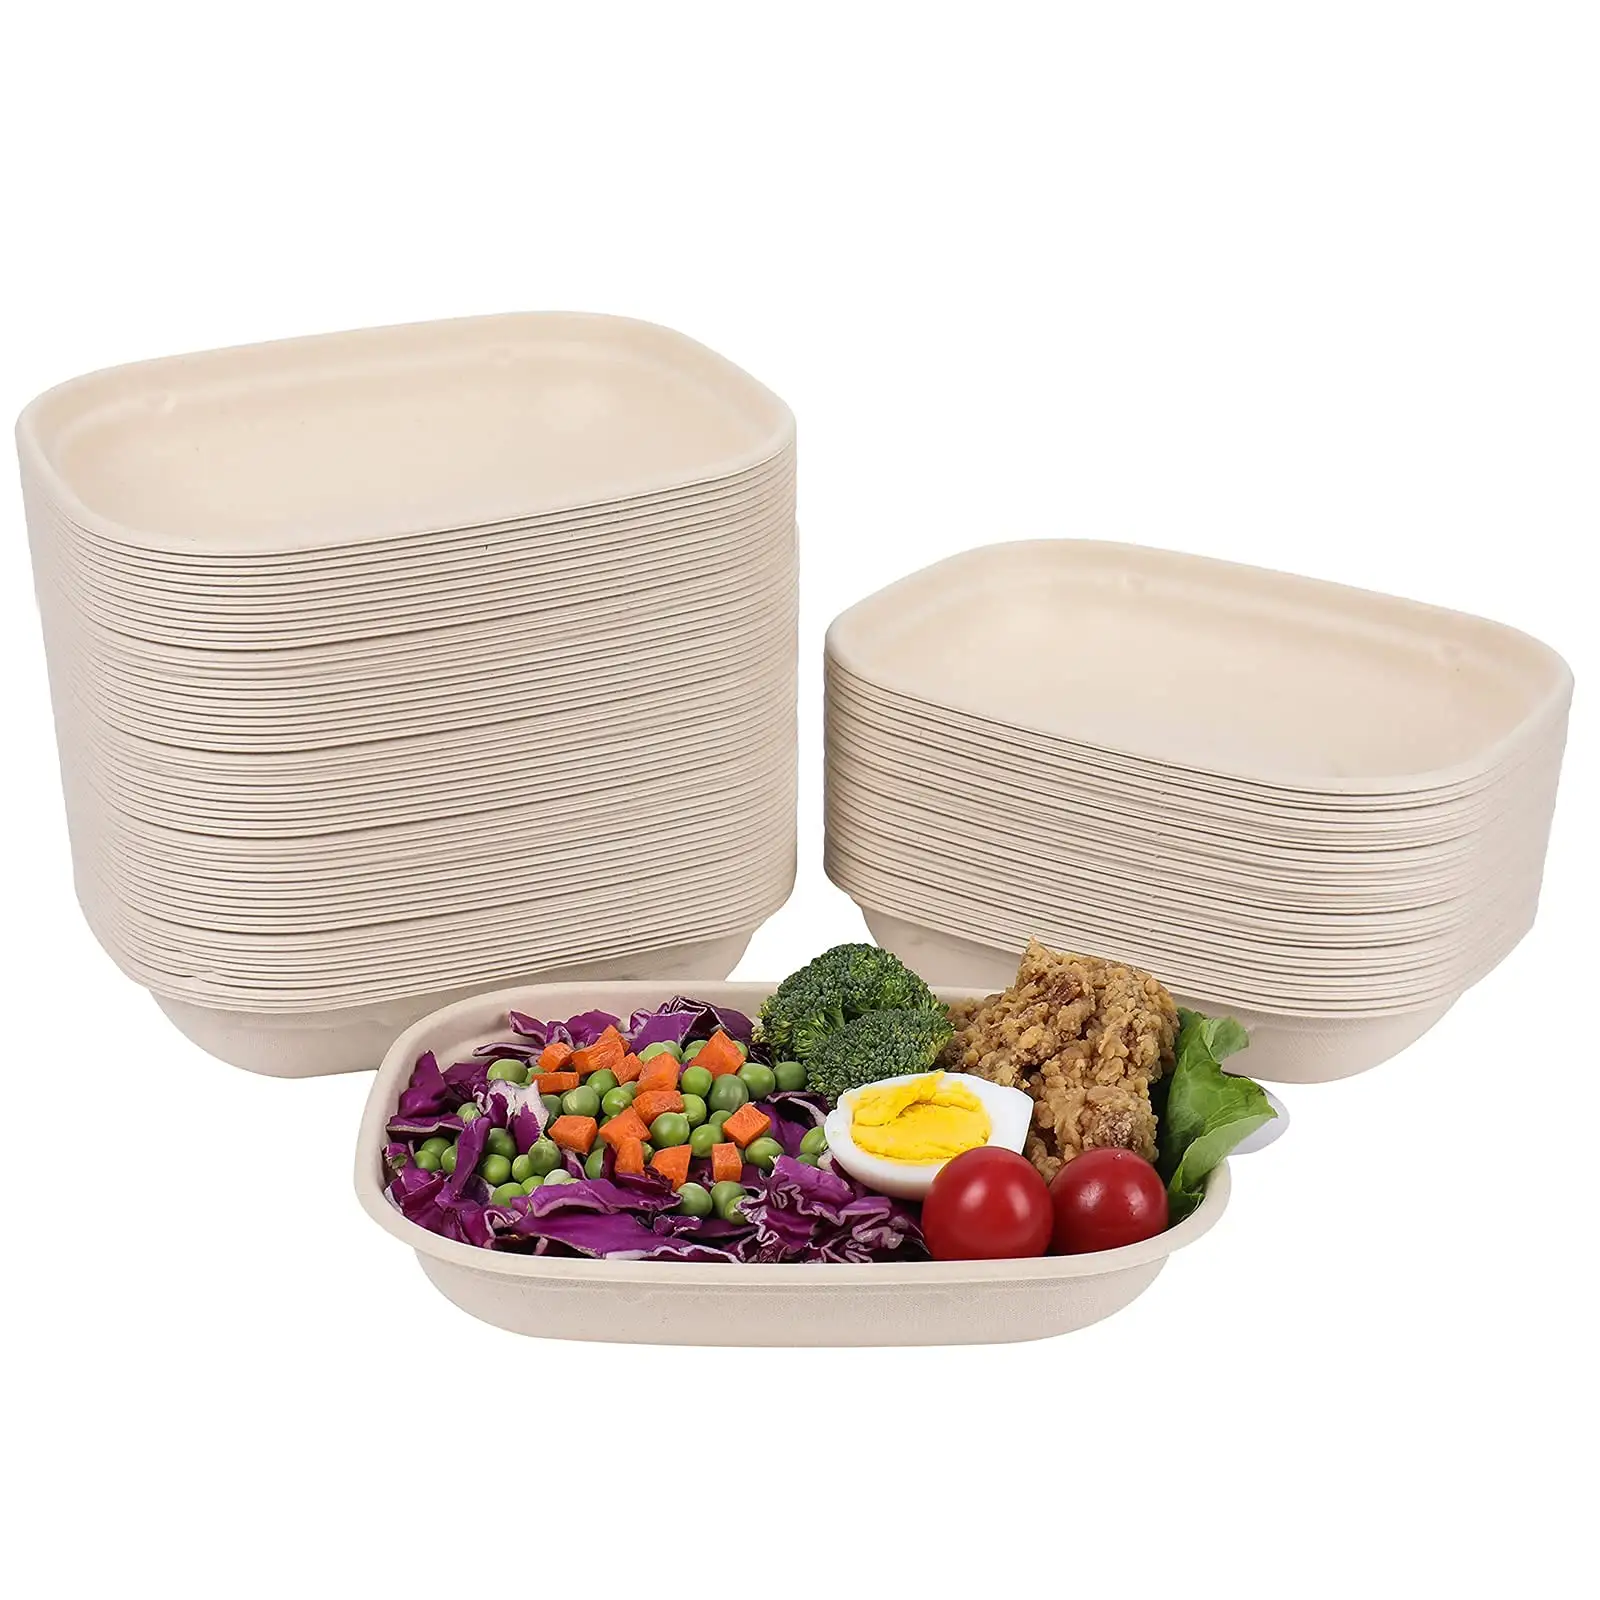 Großhandel zum Mitnehmen Bento Einweg Maisstärke Mahlzeit Lunchboxen mit klarem Deckel